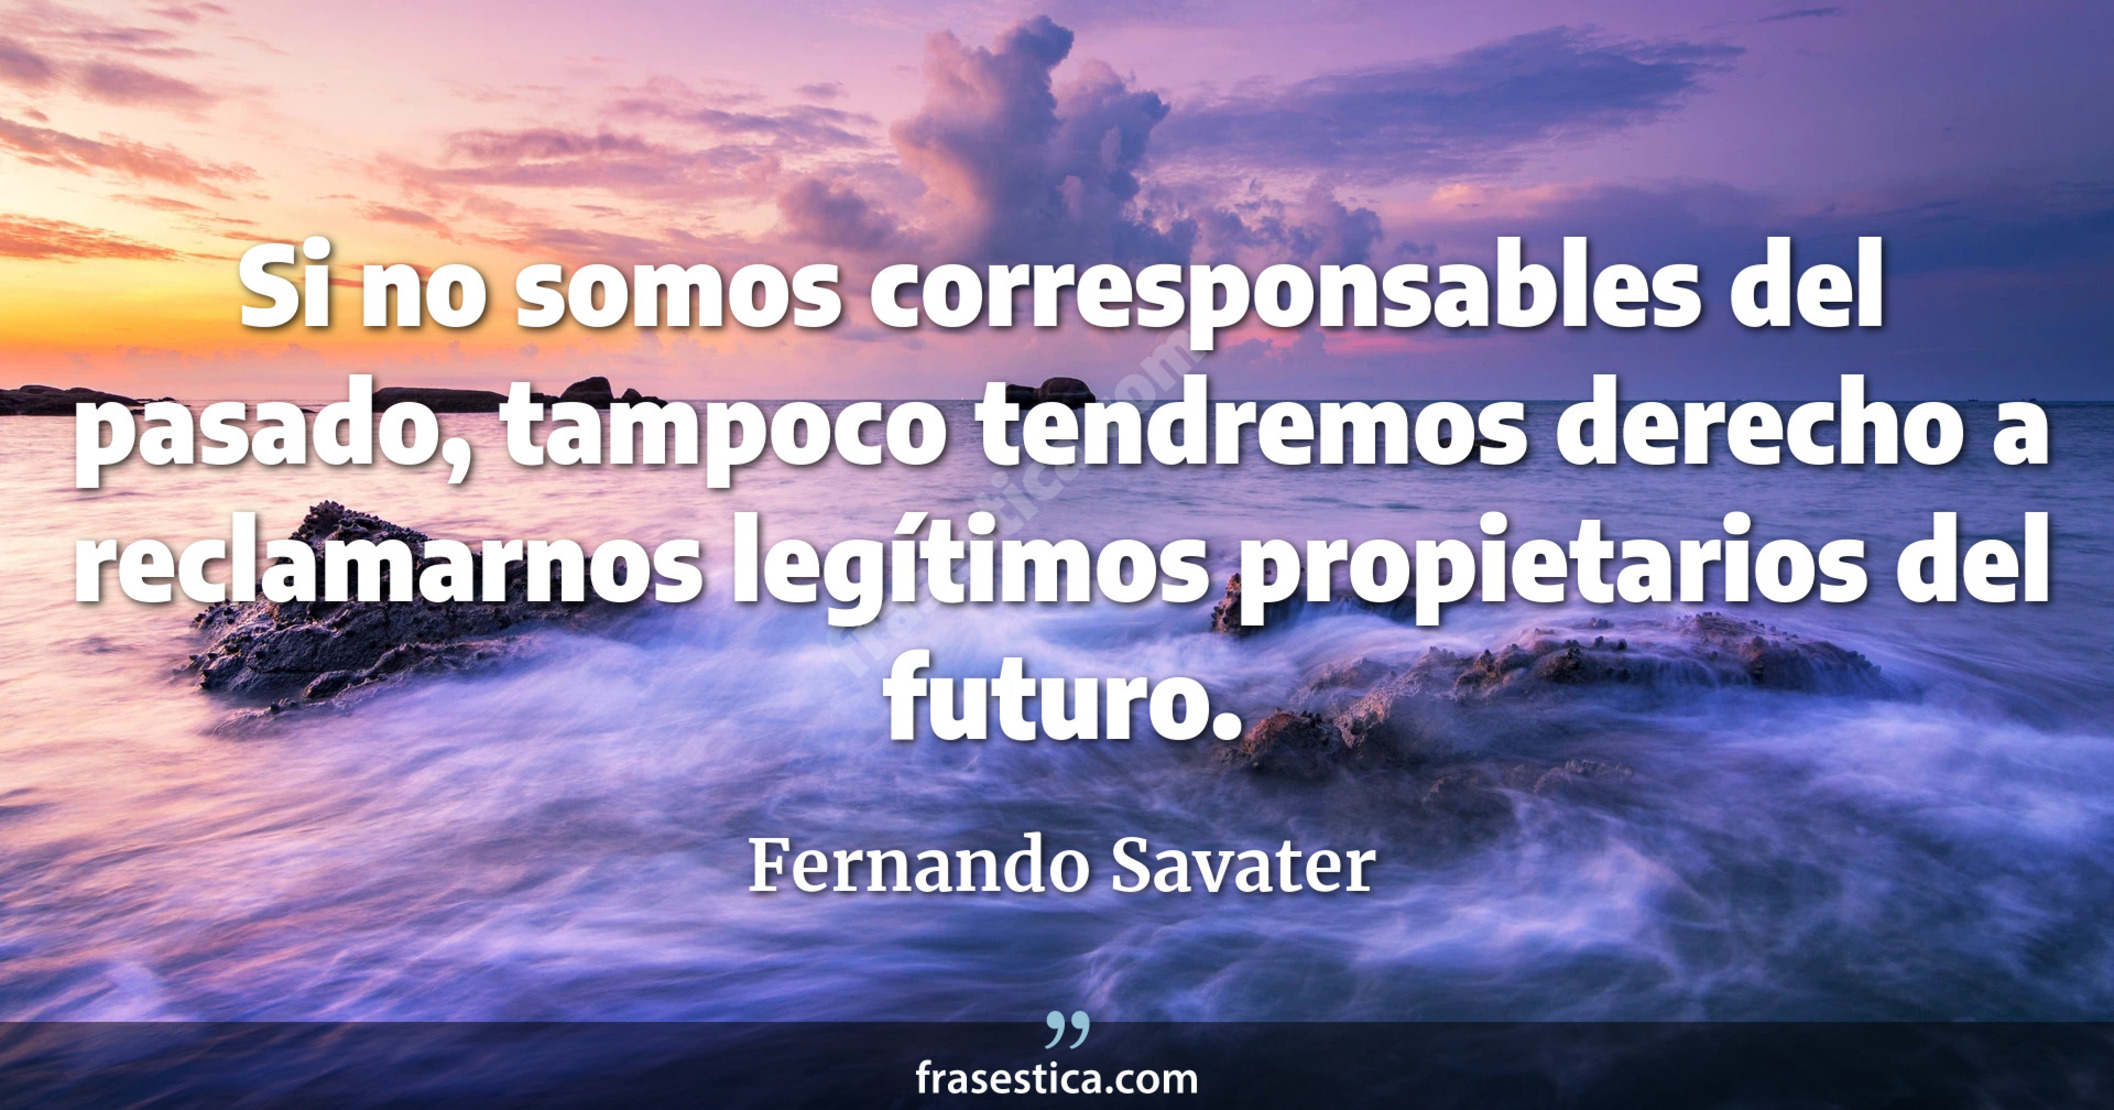 Si no somos corresponsables del pasado, tampoco tendremos derecho a reclamarnos legítimos propietarios del futuro. - Fernando Savater